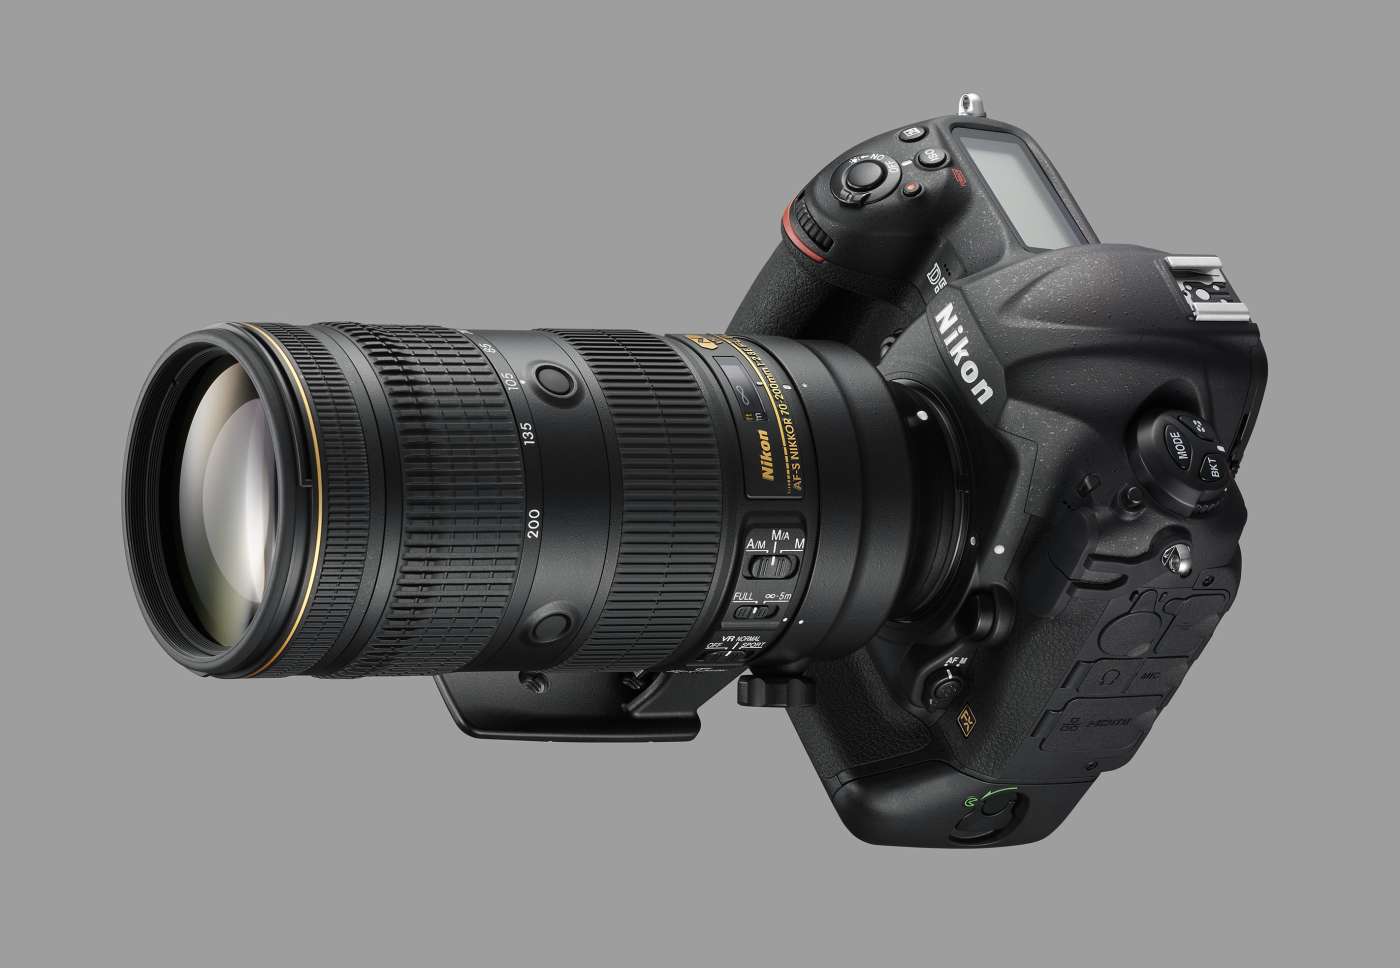 Hot Deal – Refurbished AF-S NIKKOR 70-200mm f/2.8E FL ED VR Lens for $1,999 at B&H !